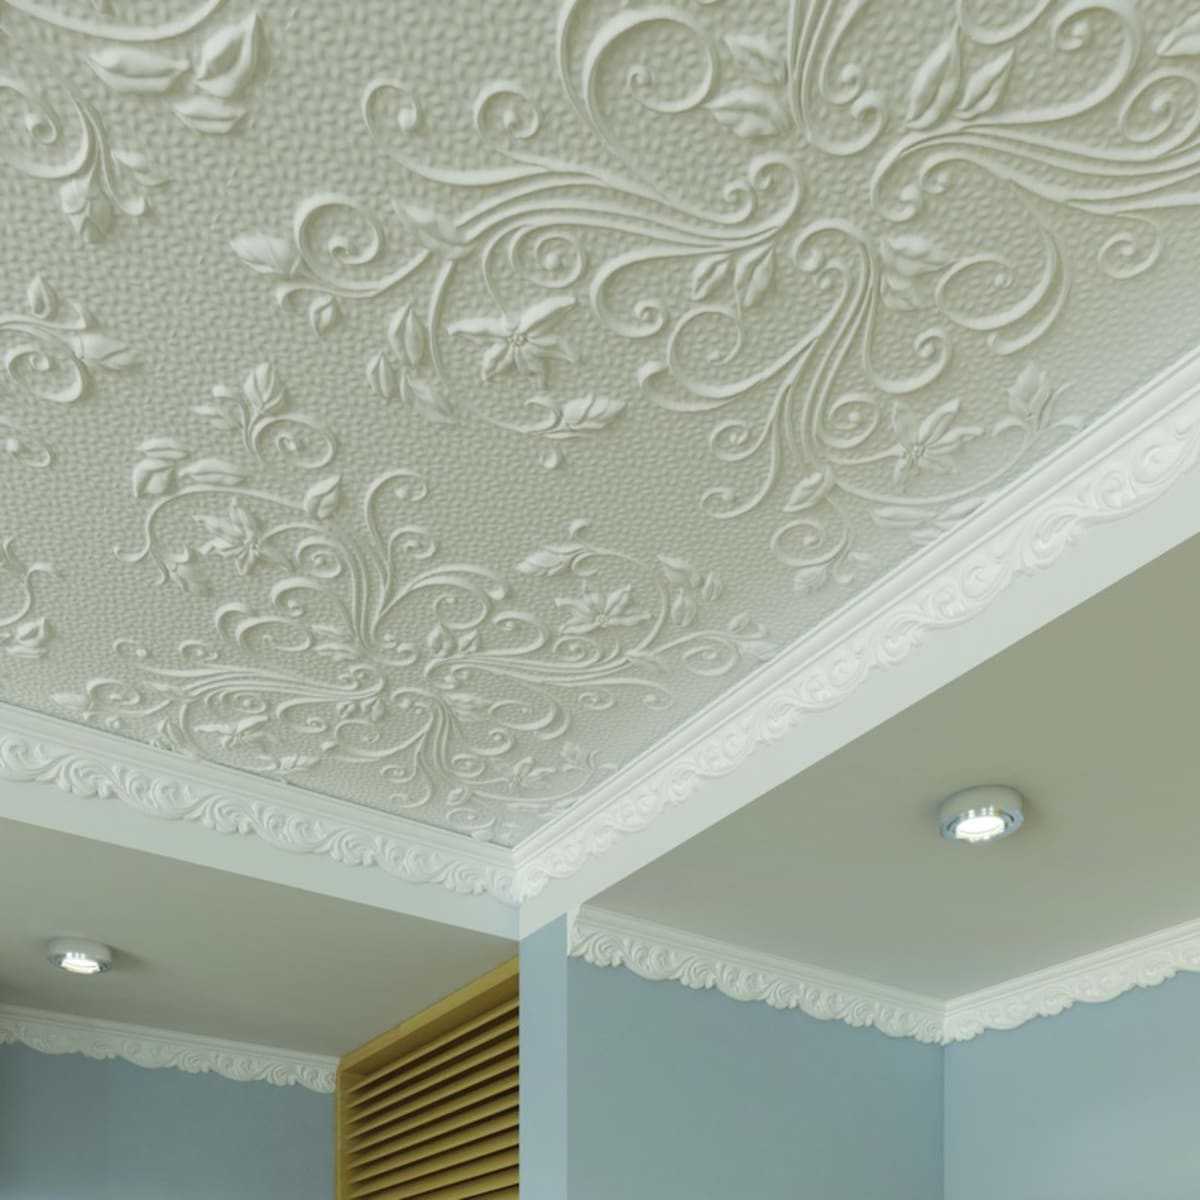 Как клеить плитку на потолок: инструкция и стильные варианты укладки потолочной плитки - всё для дома
                                             - 3 марта
                                             - 43635074037 - медиаплатформа миртесен